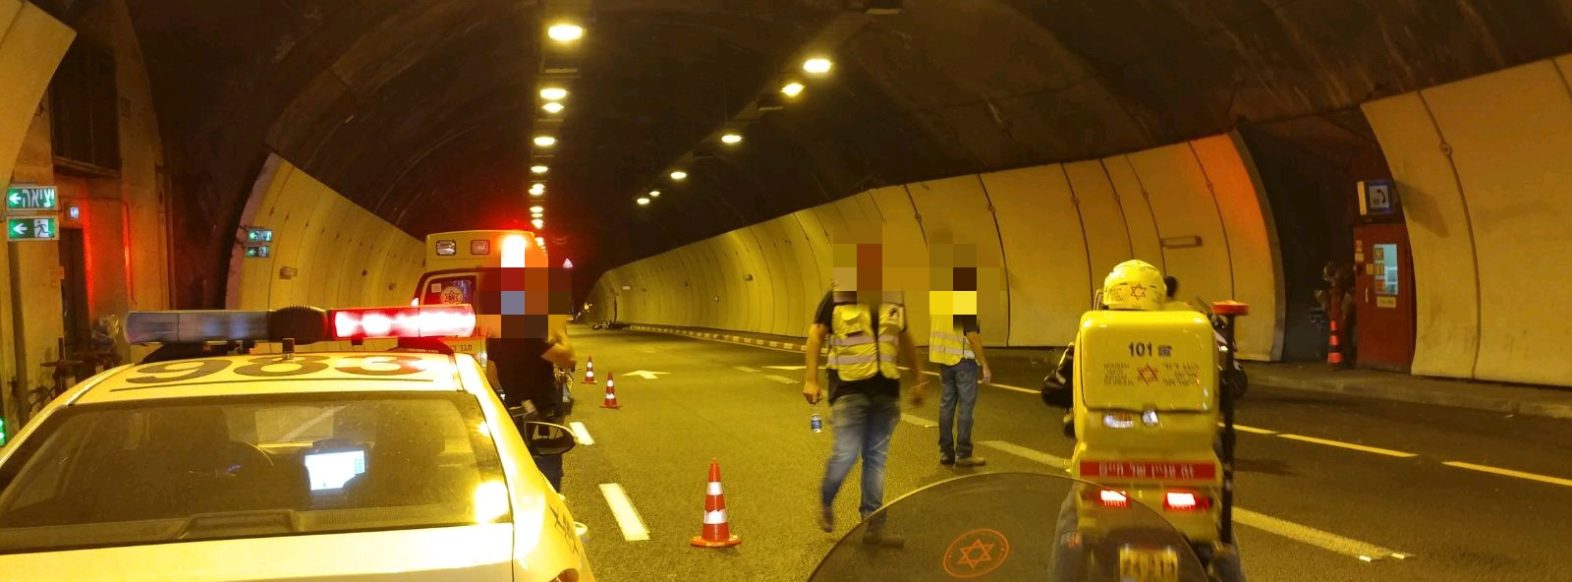 תאונה במנהרת הכרמל בין אופנוע לרכב פרטי-עומסים במקום